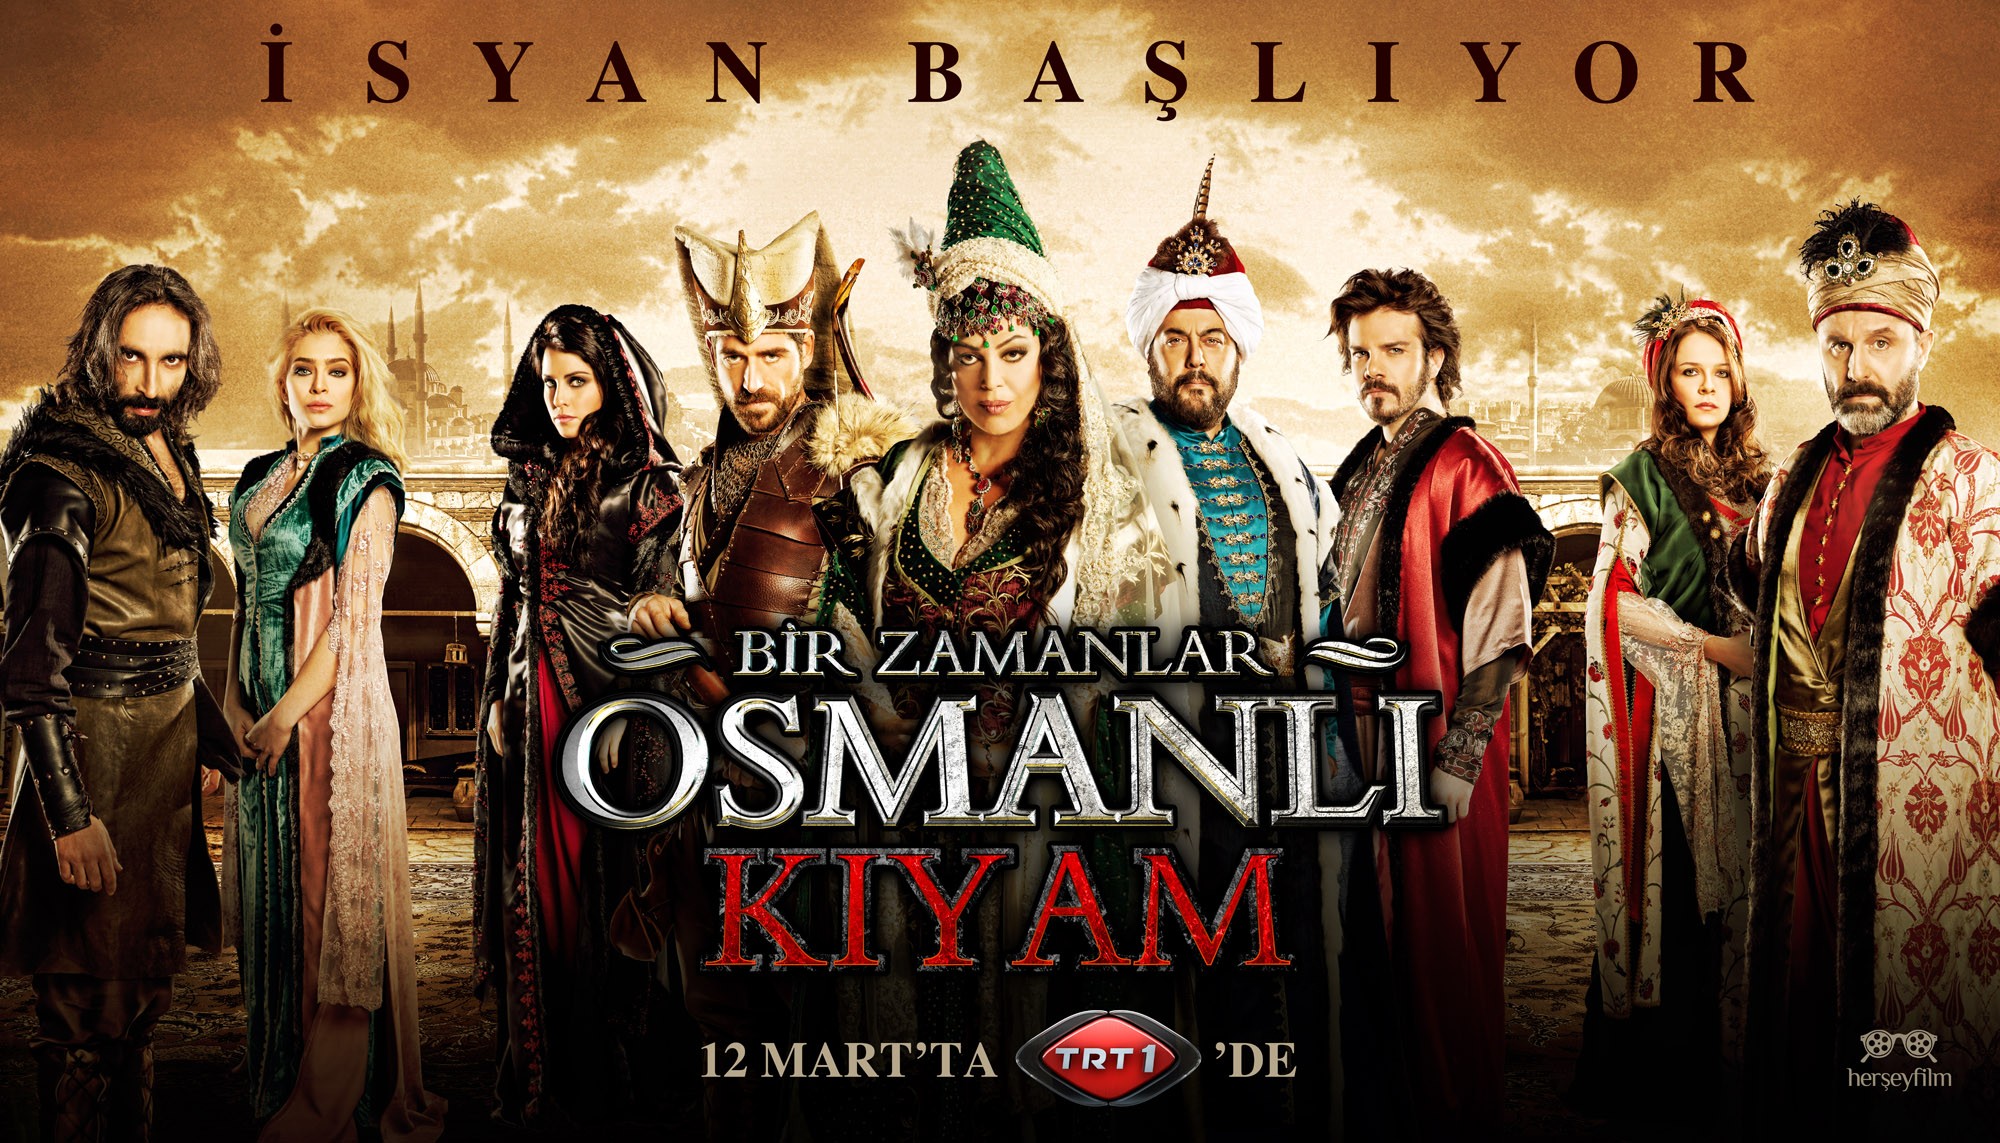 Mega Sized TV Poster Image for Bir Zamanlar Osmanli Kiyam (#11 of 26)